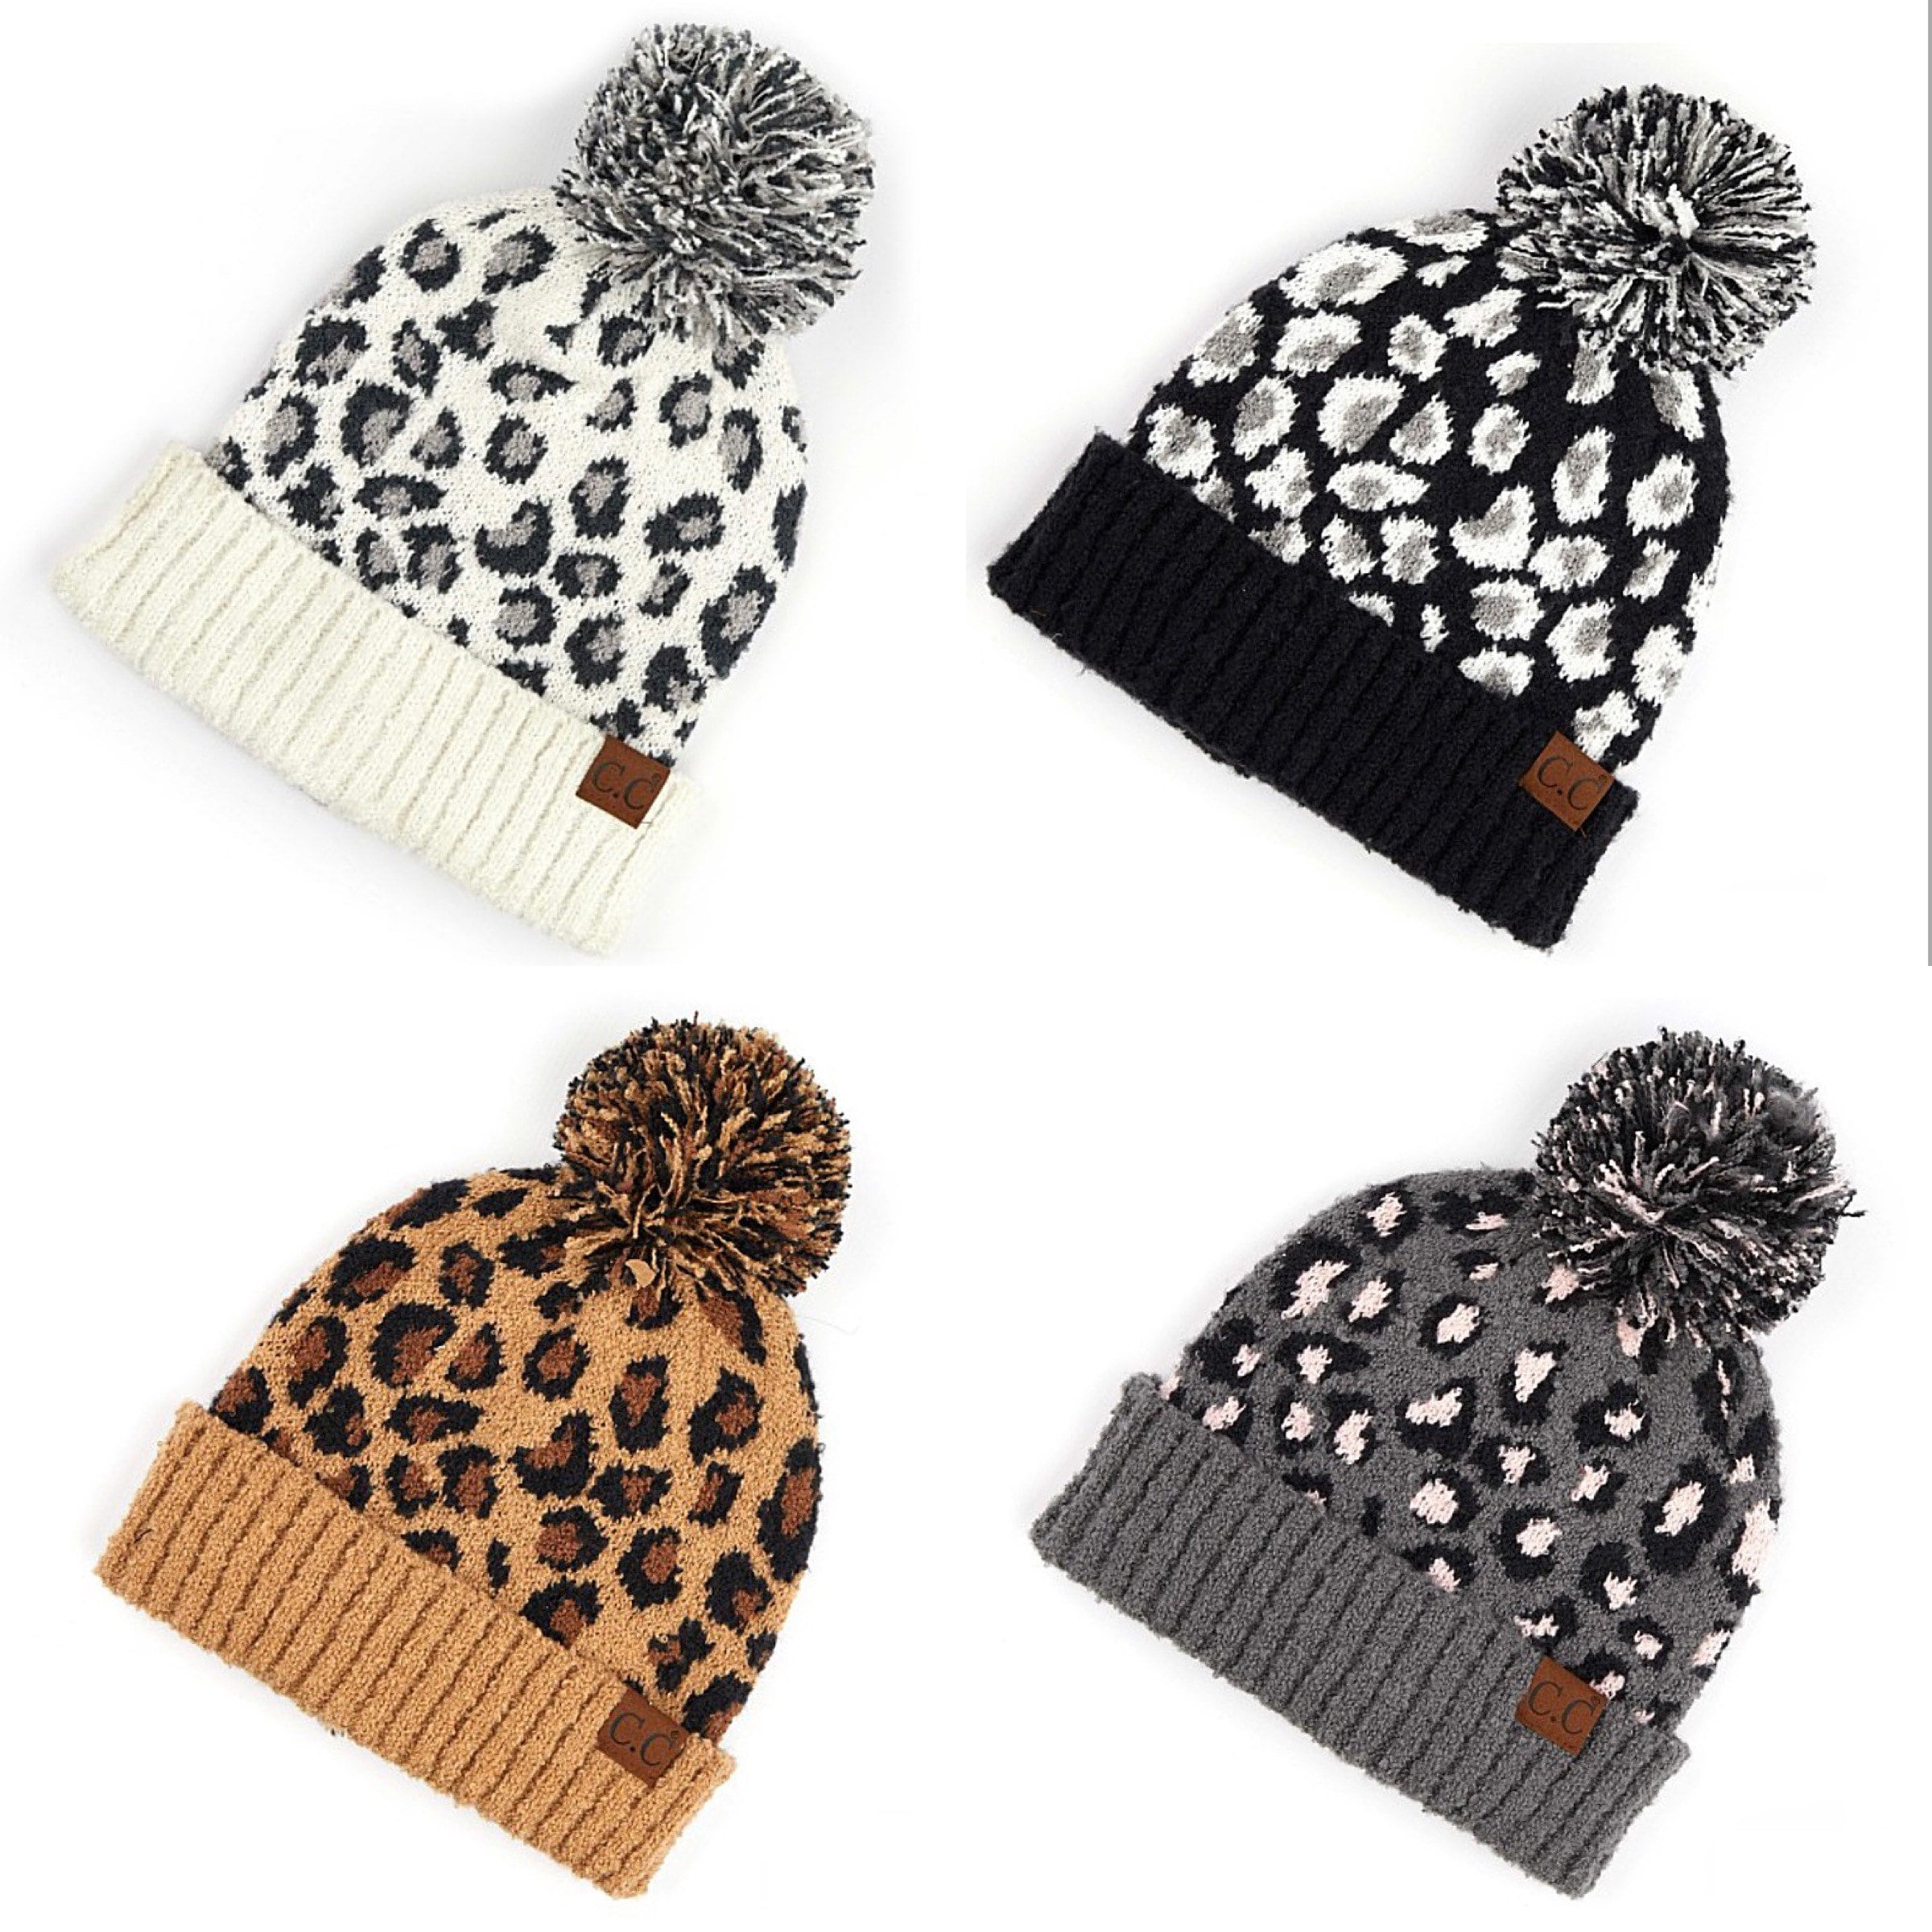 Beanie W/ Leopard Knit Soft Warm Cozy Cute Winter Hat – Spot